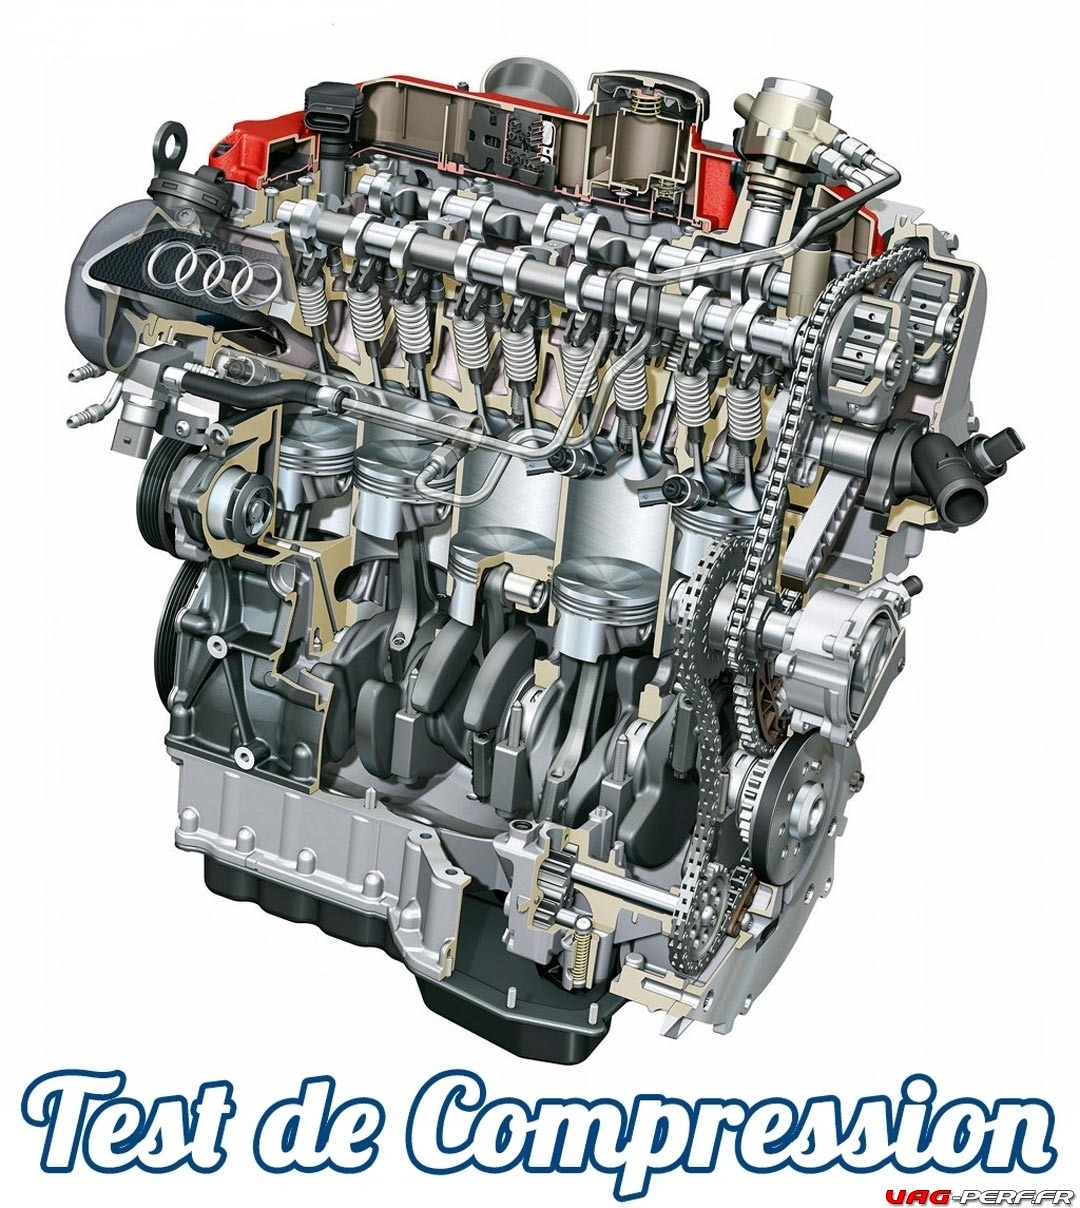 Test de compression du moteur : que révèle-t-il sur le moteur ?